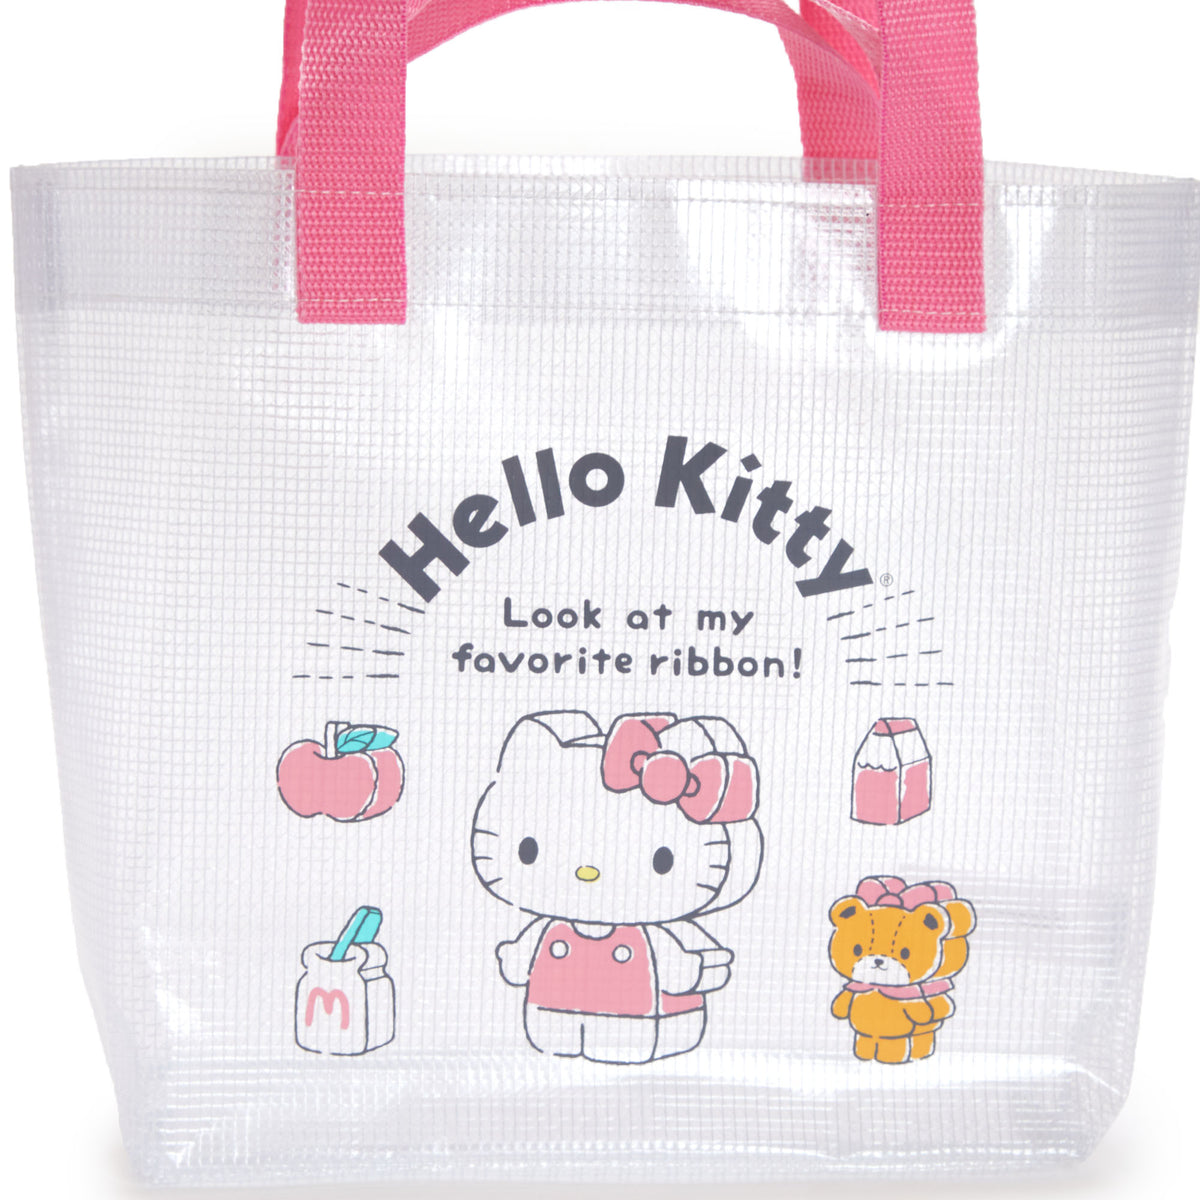 Hello Kitty 2-Way Vinyl Tote Bag (Besties Friend Series)